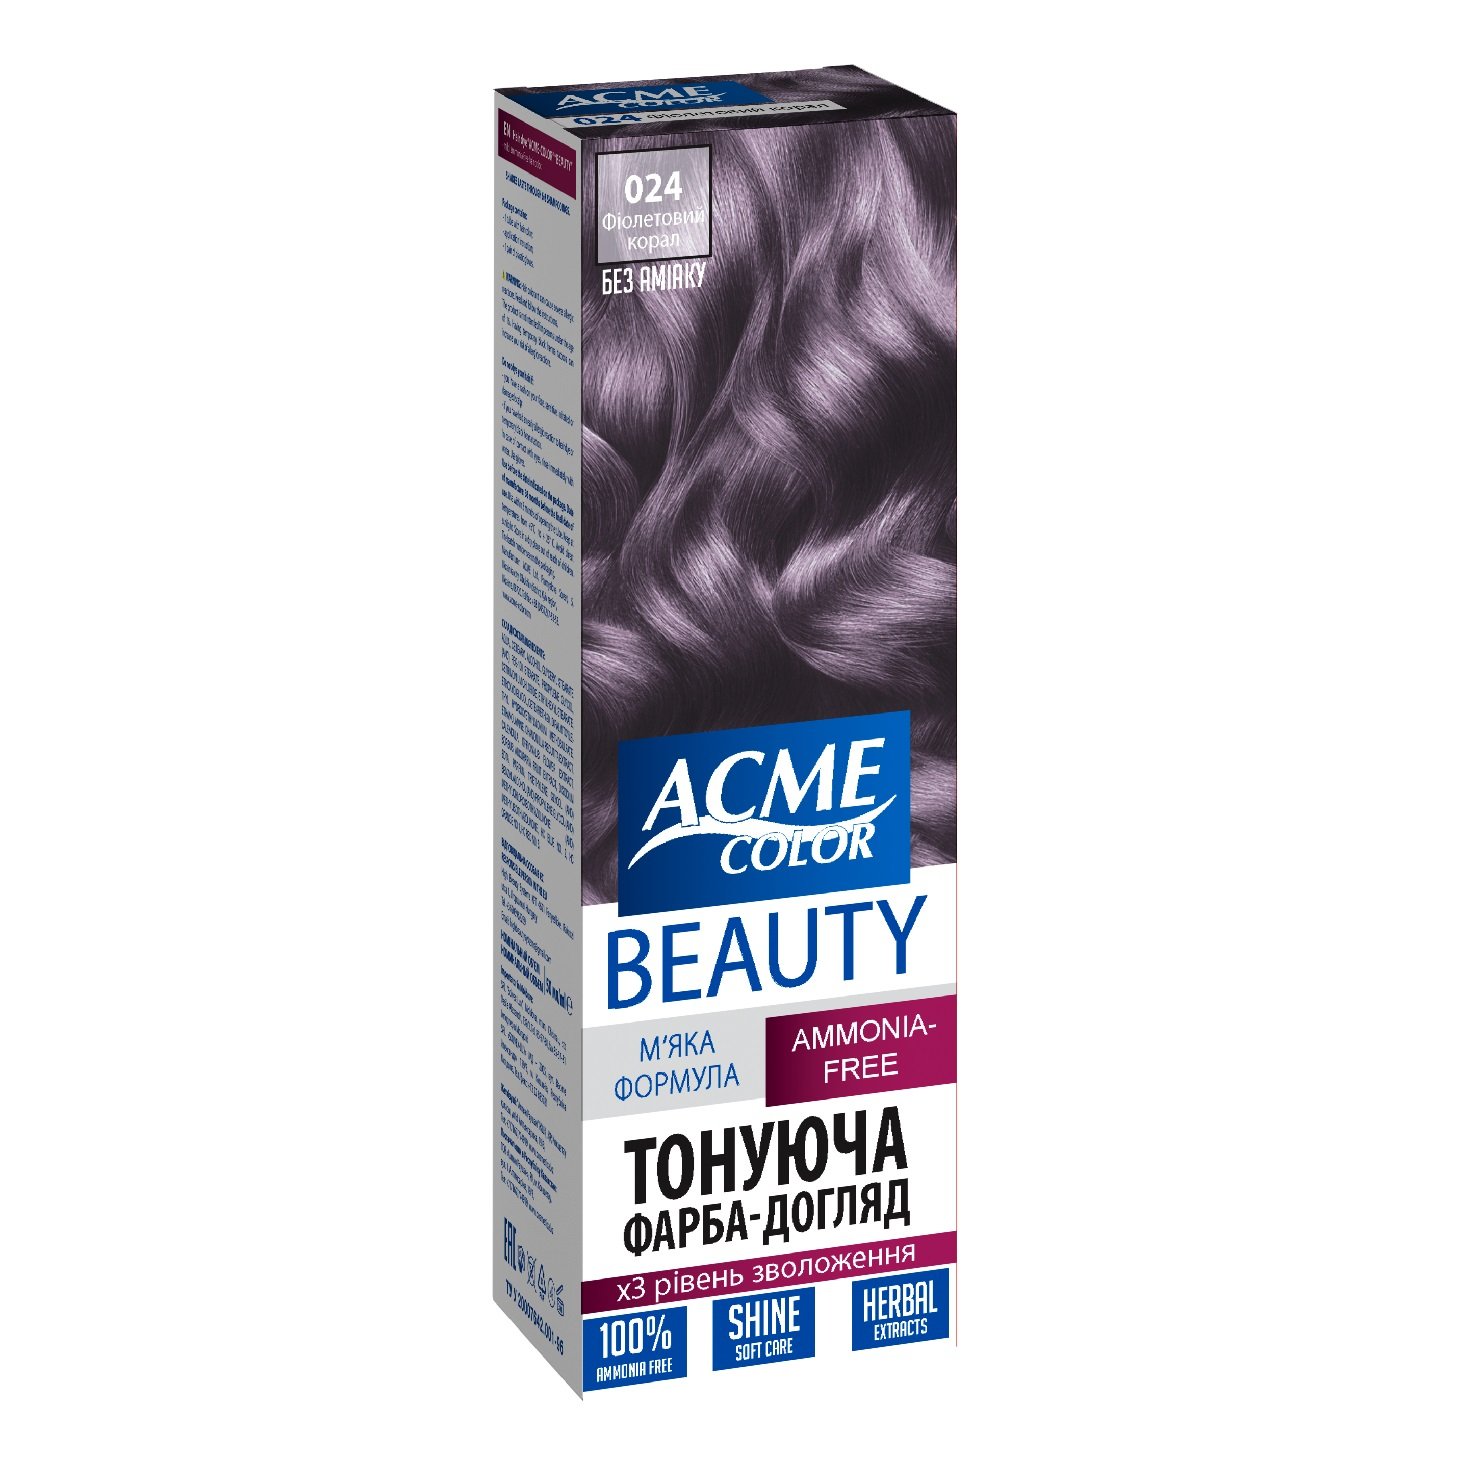 Гель-краска для волос Acme-color Beauty, оттенок 024 (Фиолетовый коралл), 69 г - фото 1